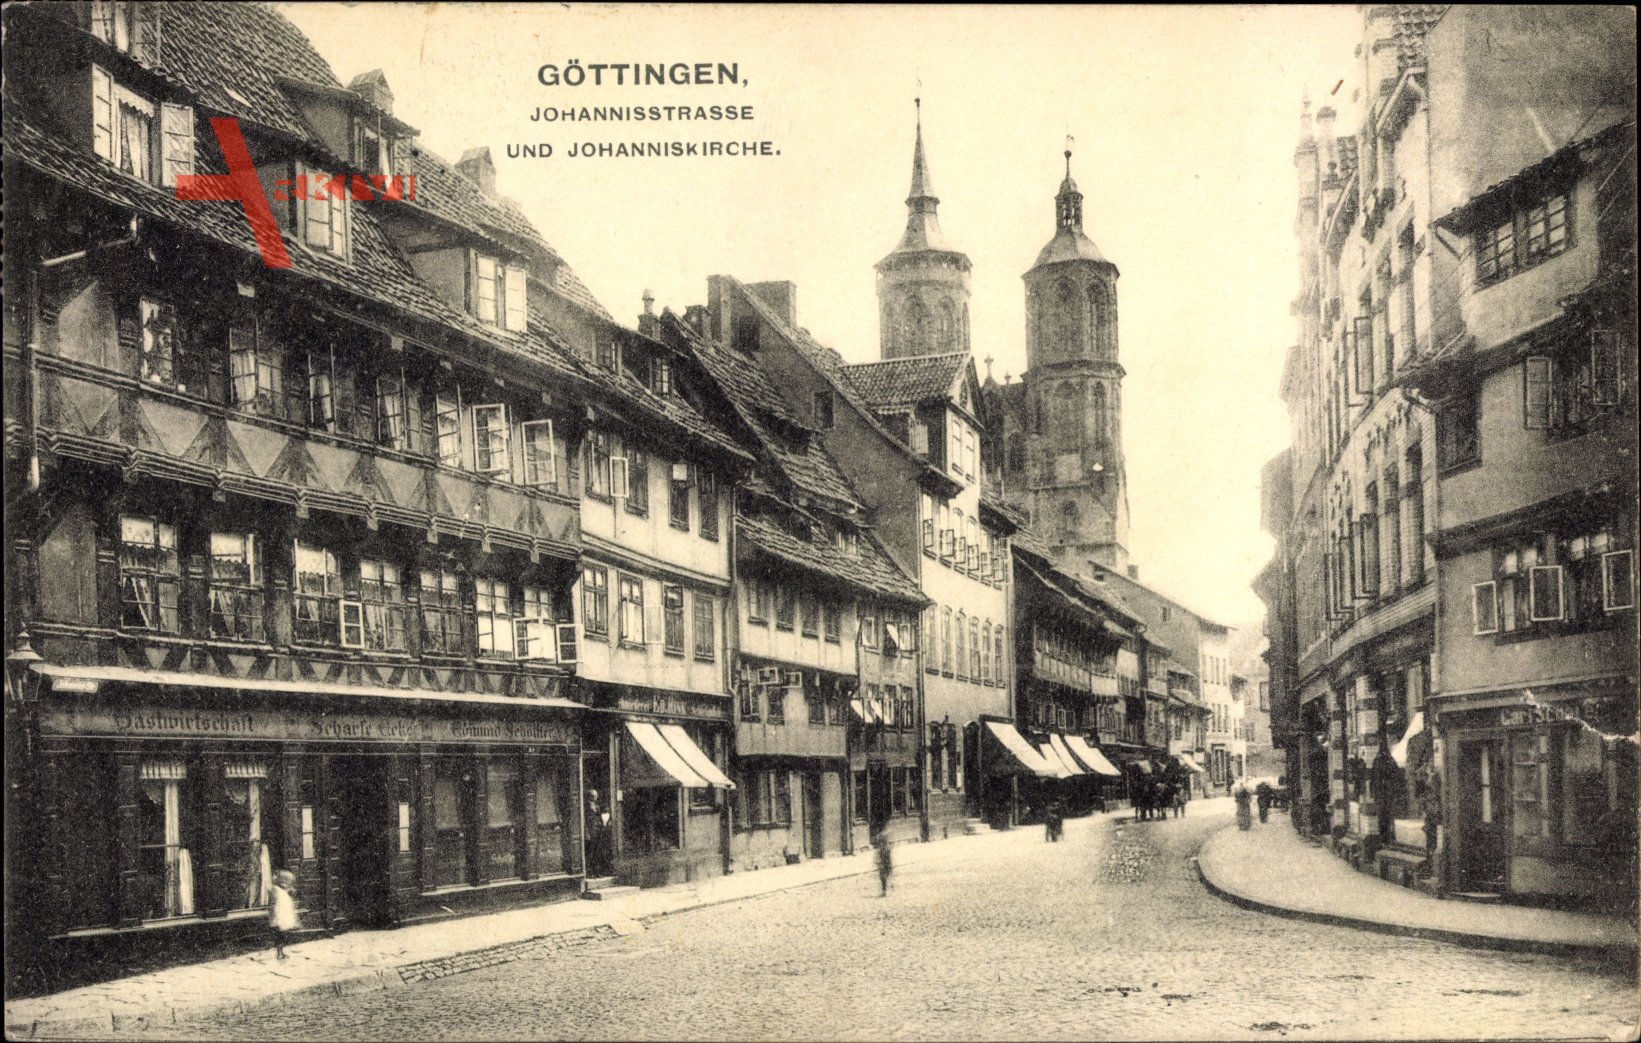 Göttingen in Niedersachsen, Johannisstraße mit Johanniskirche, Fachwerkhäuser